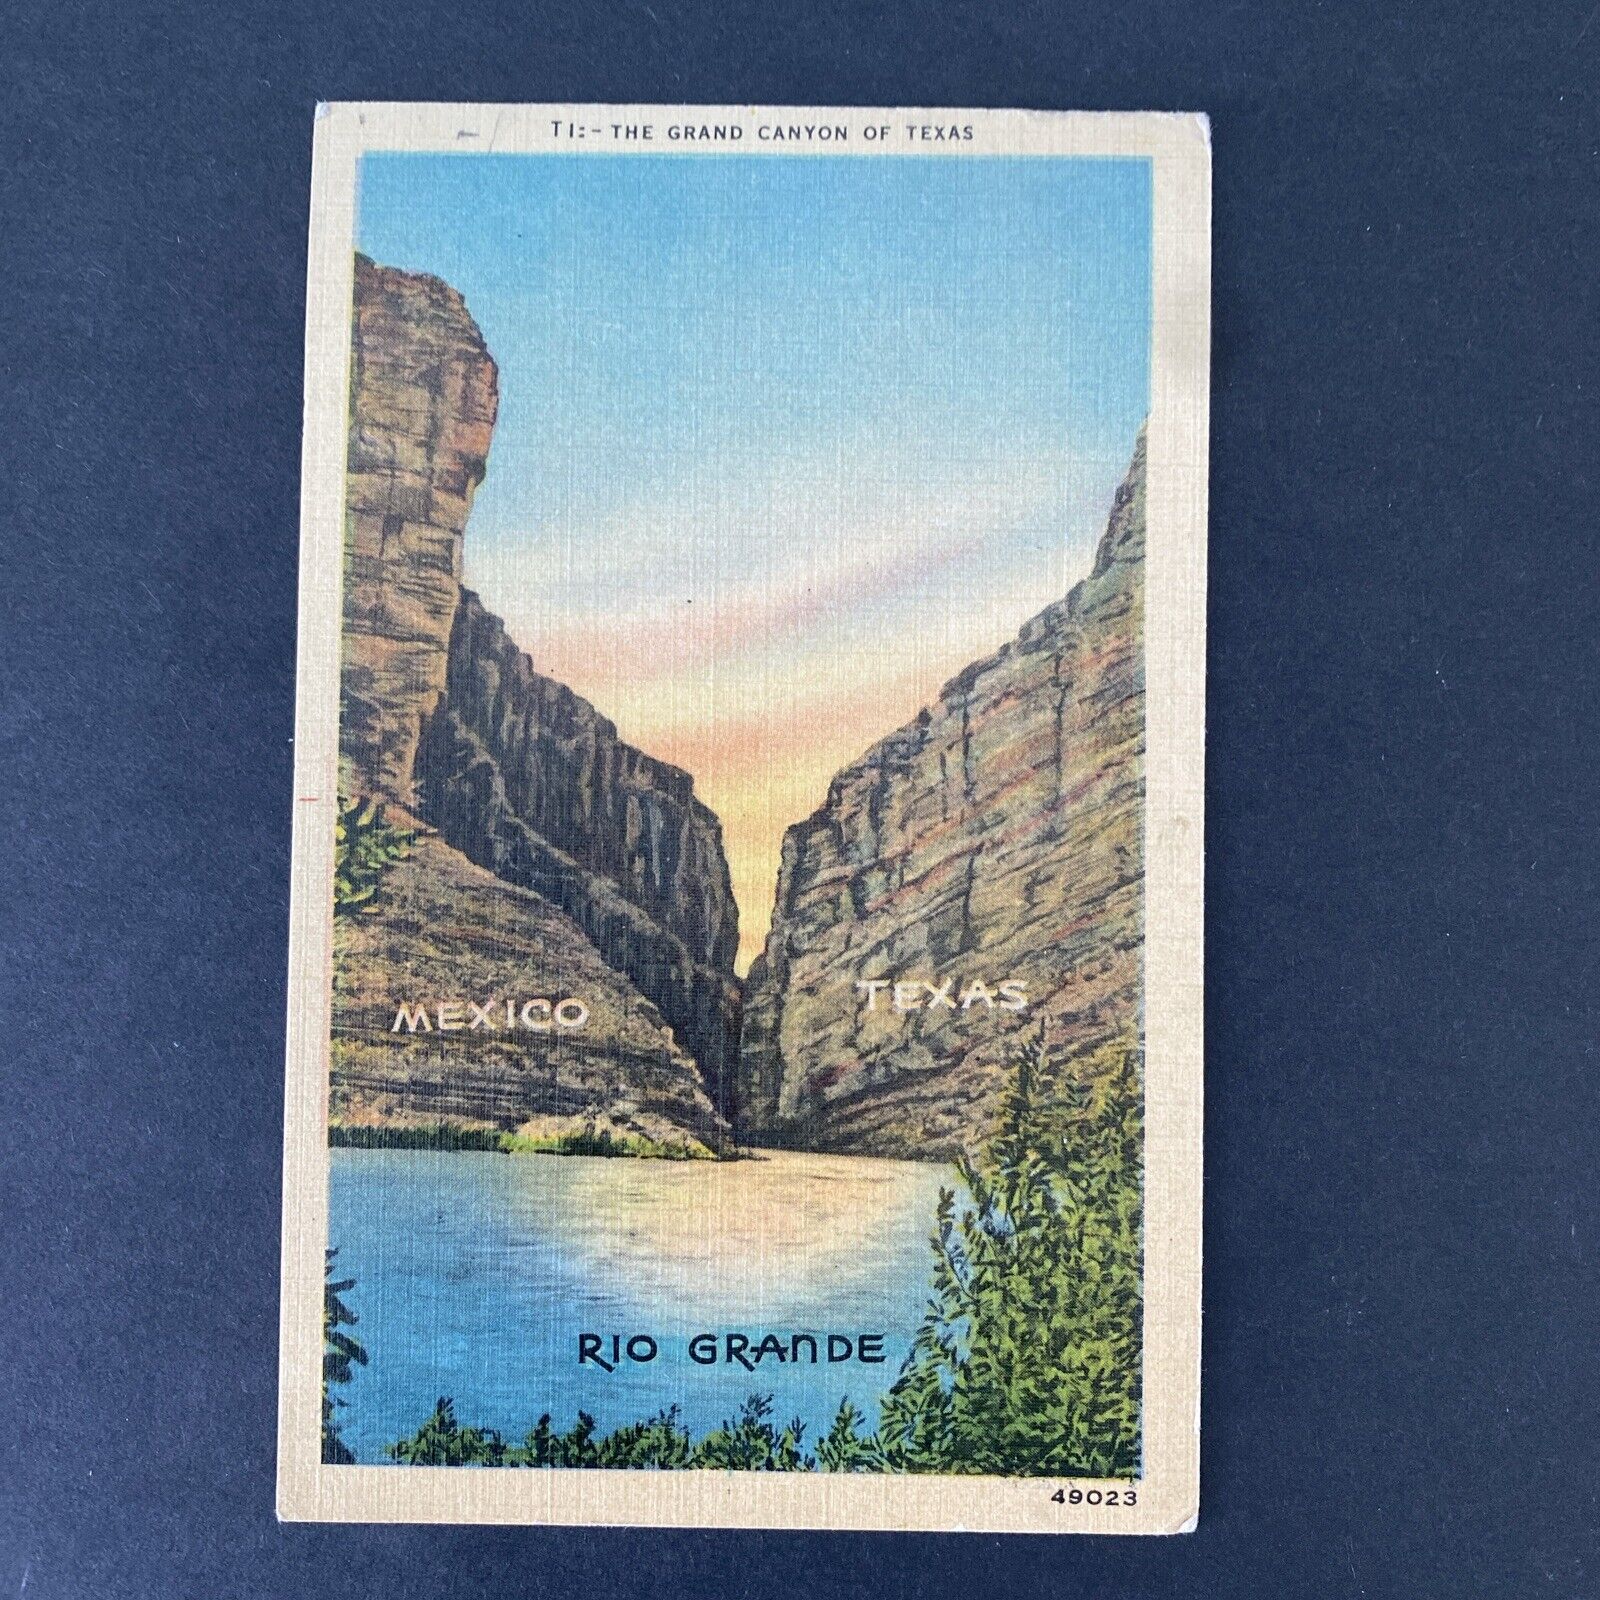 Rio Grande Postcard Vintage 1948. The Grand Canyon Of Texas. Mexico Border